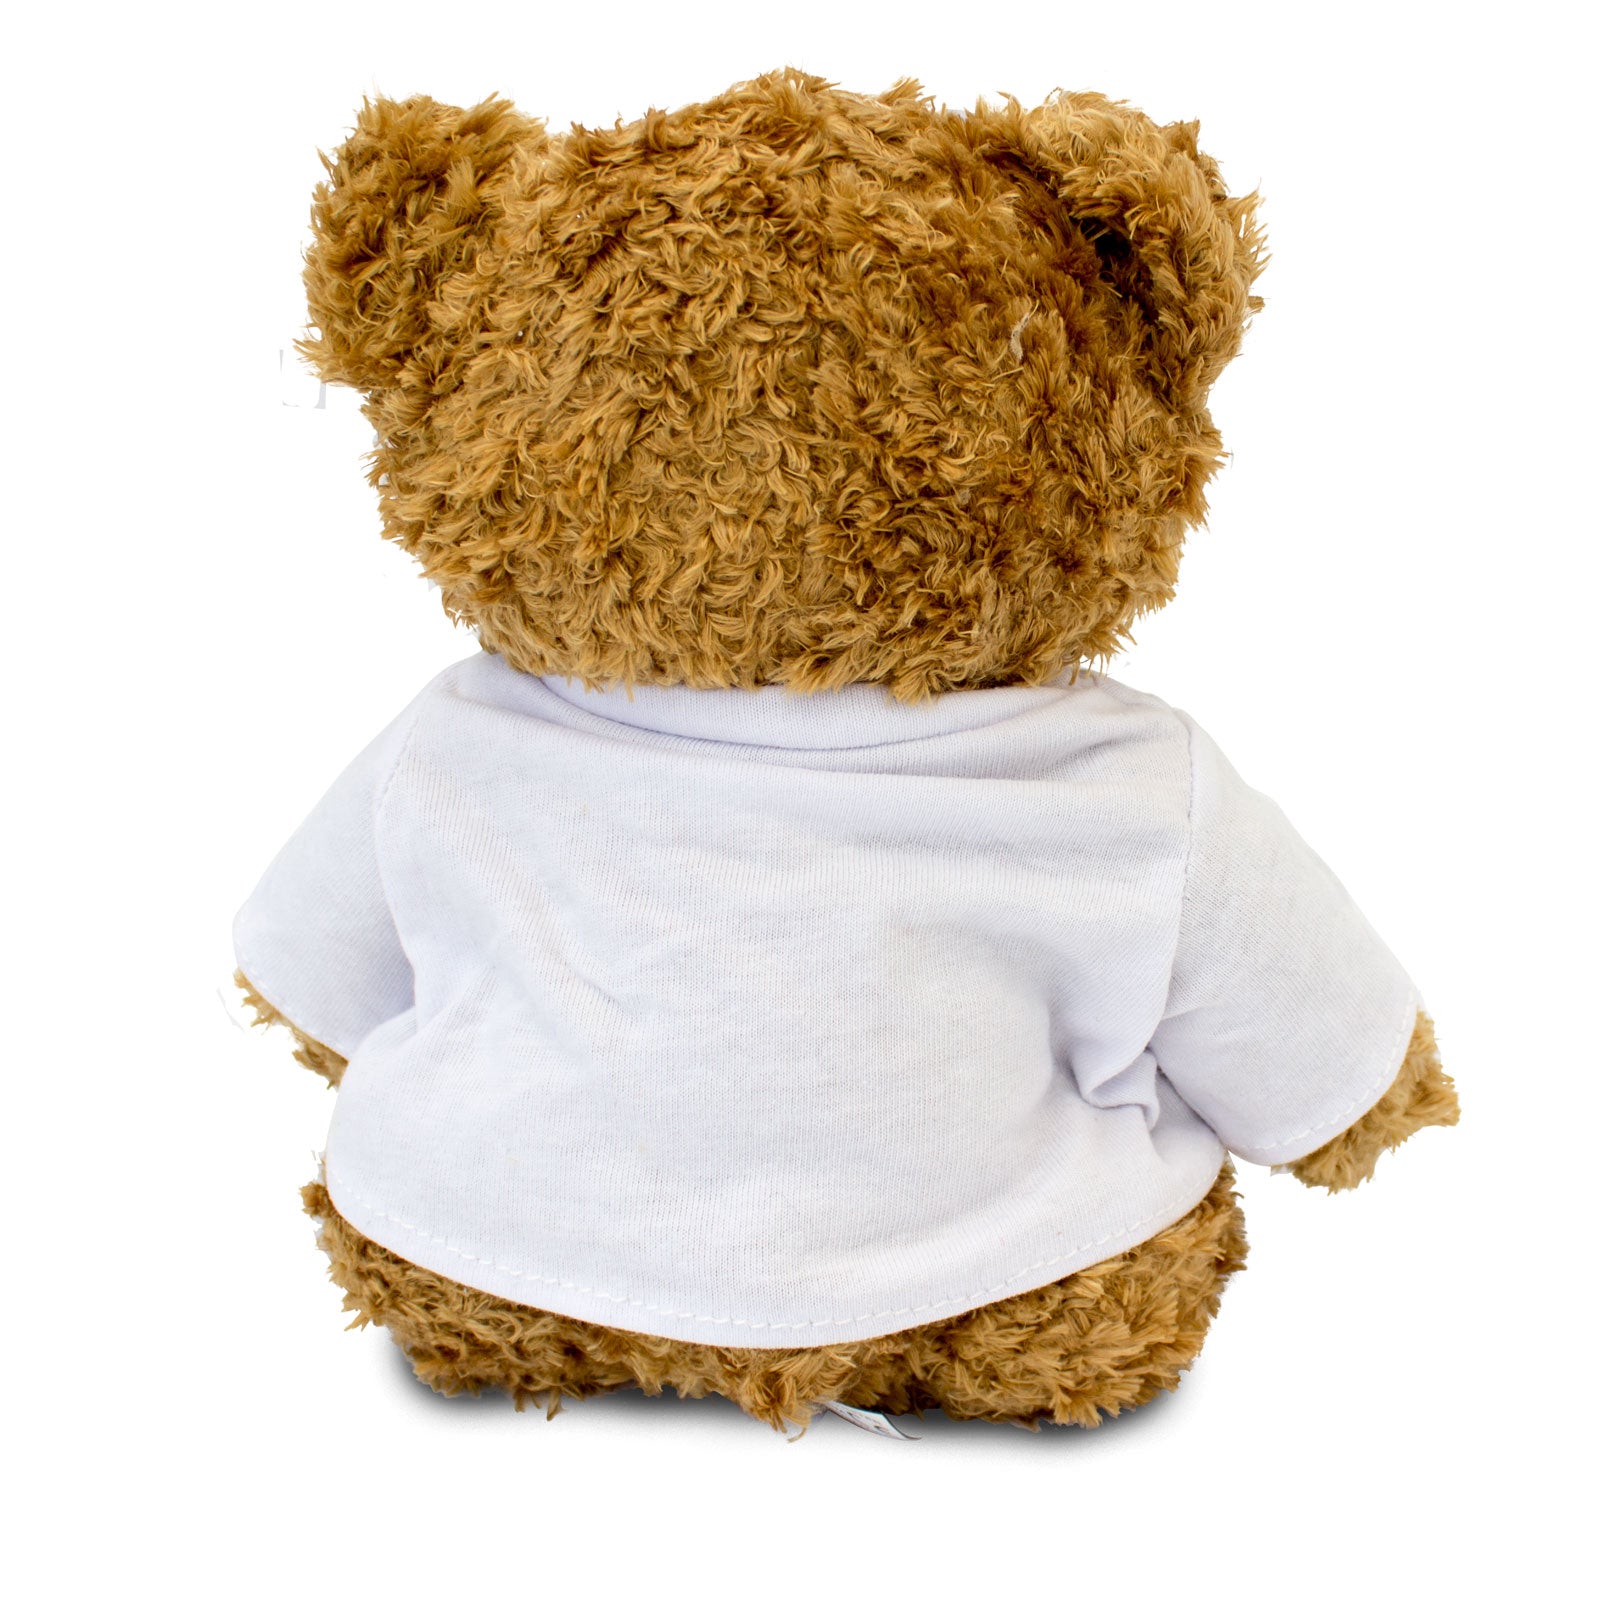 Get Well Soon Helene - Teddy Bear